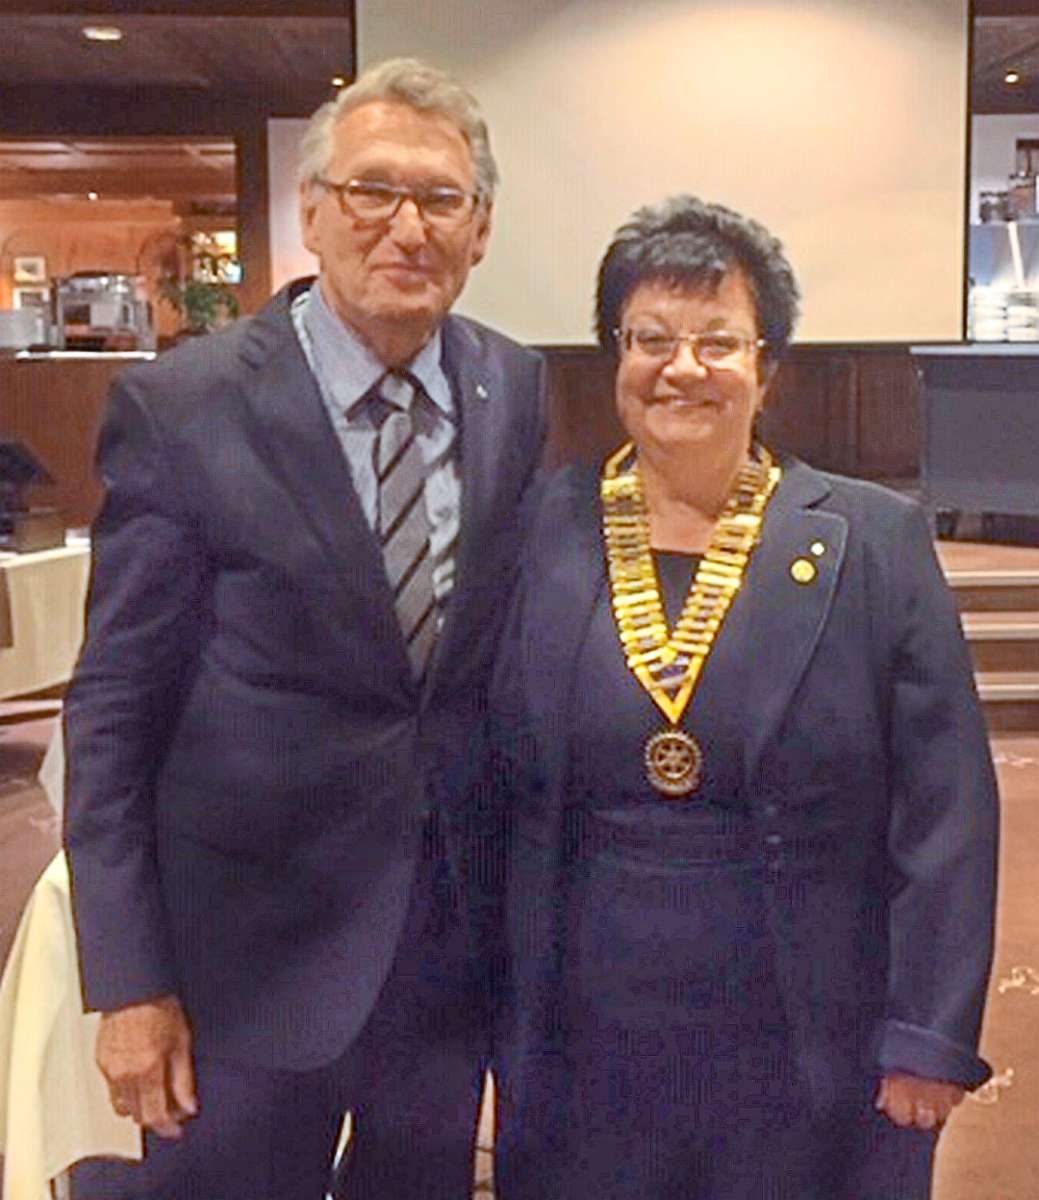 Rotary-Club Furtwangen-Triberg: Ute Duffner neue Präsidentin